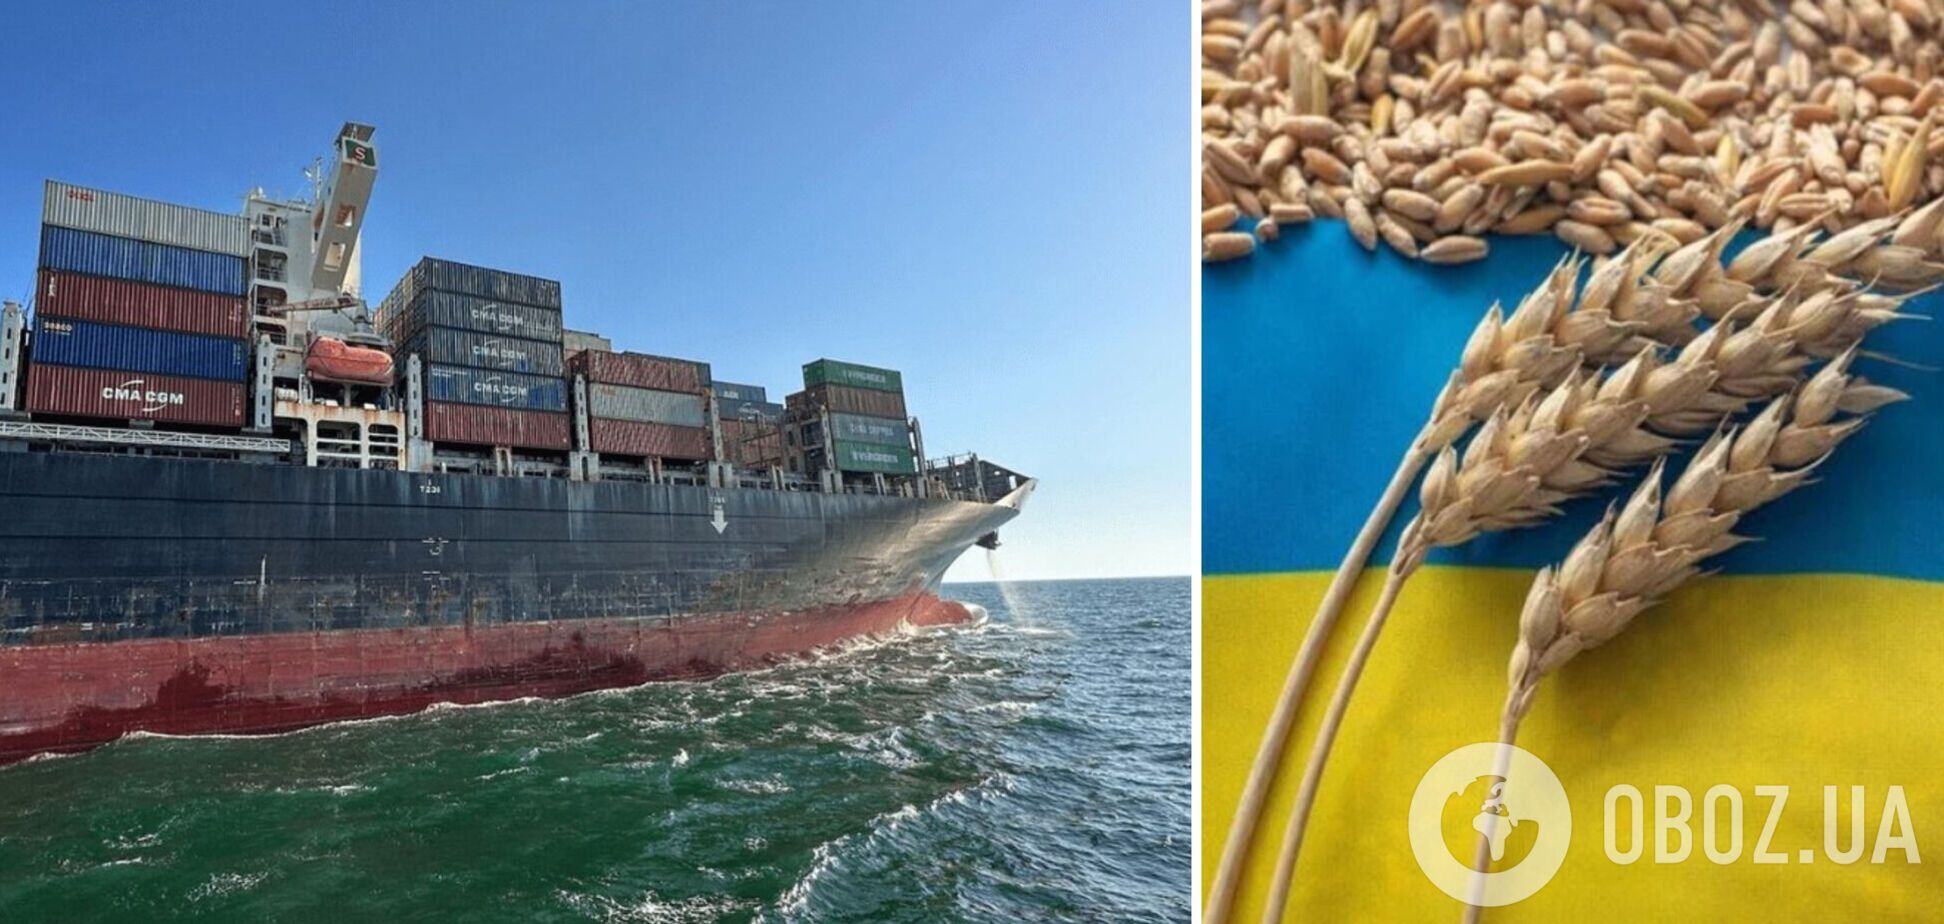 Украина наращивает объемы экспорта по Черному морю: 70% продукции – сельскохозяйственное зерно